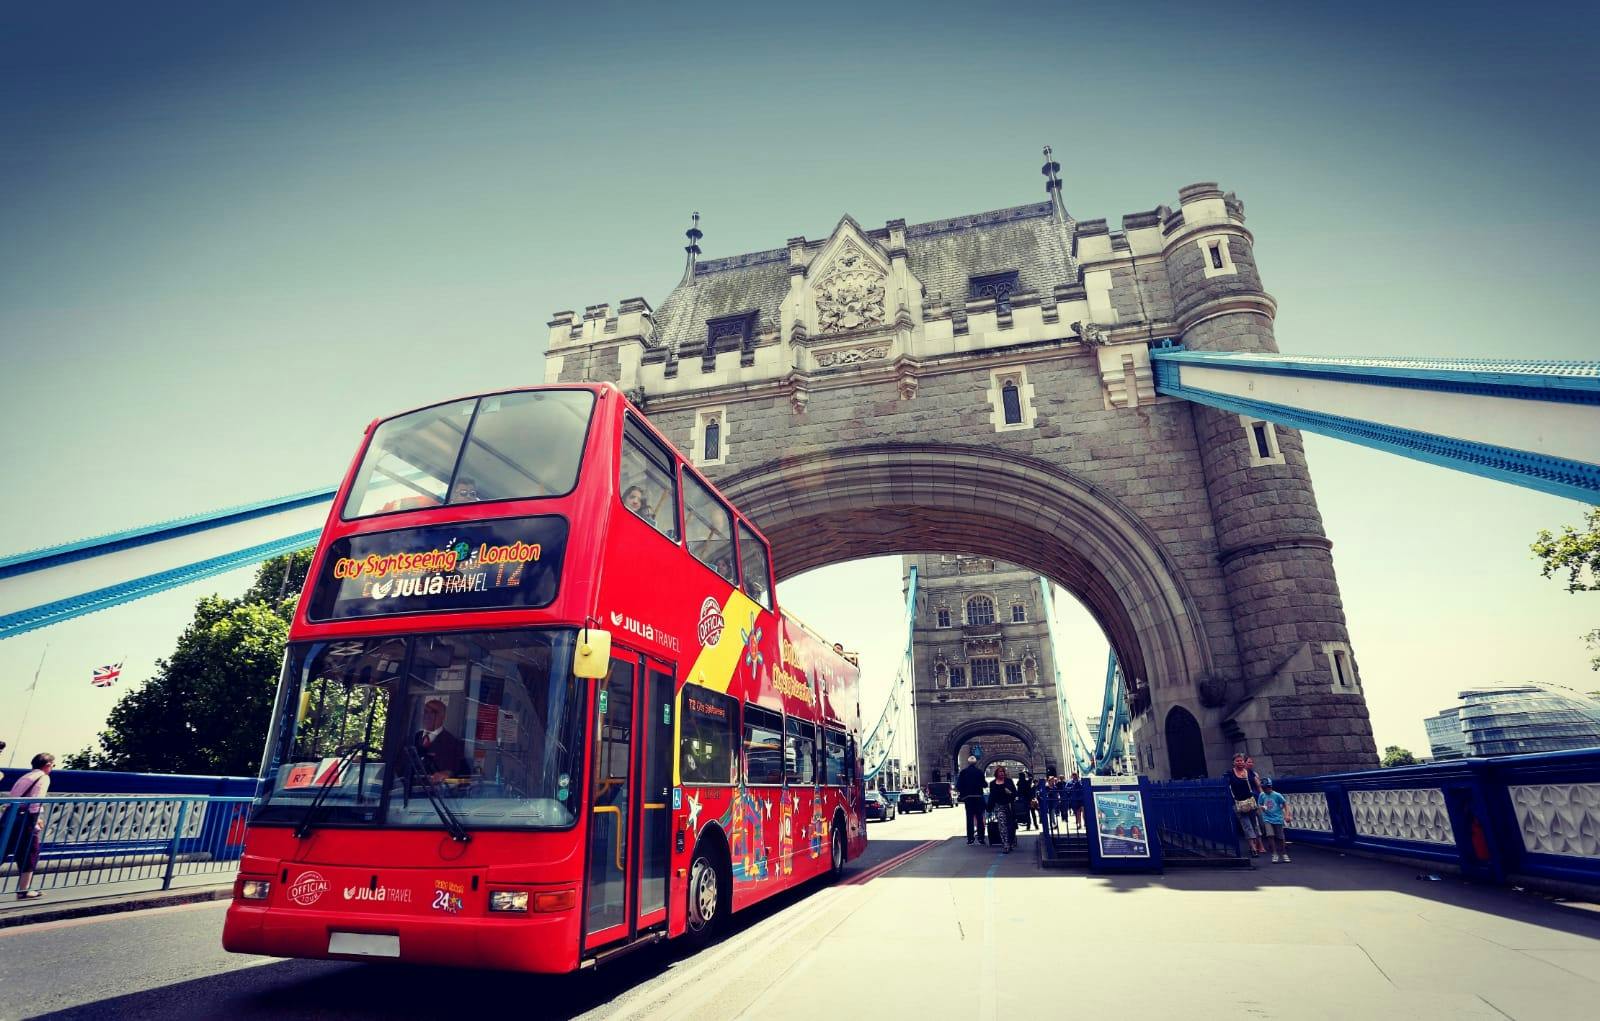 Wycieczka autobusowa po Londynie typu hop-on hop-off typu City Sightseeing